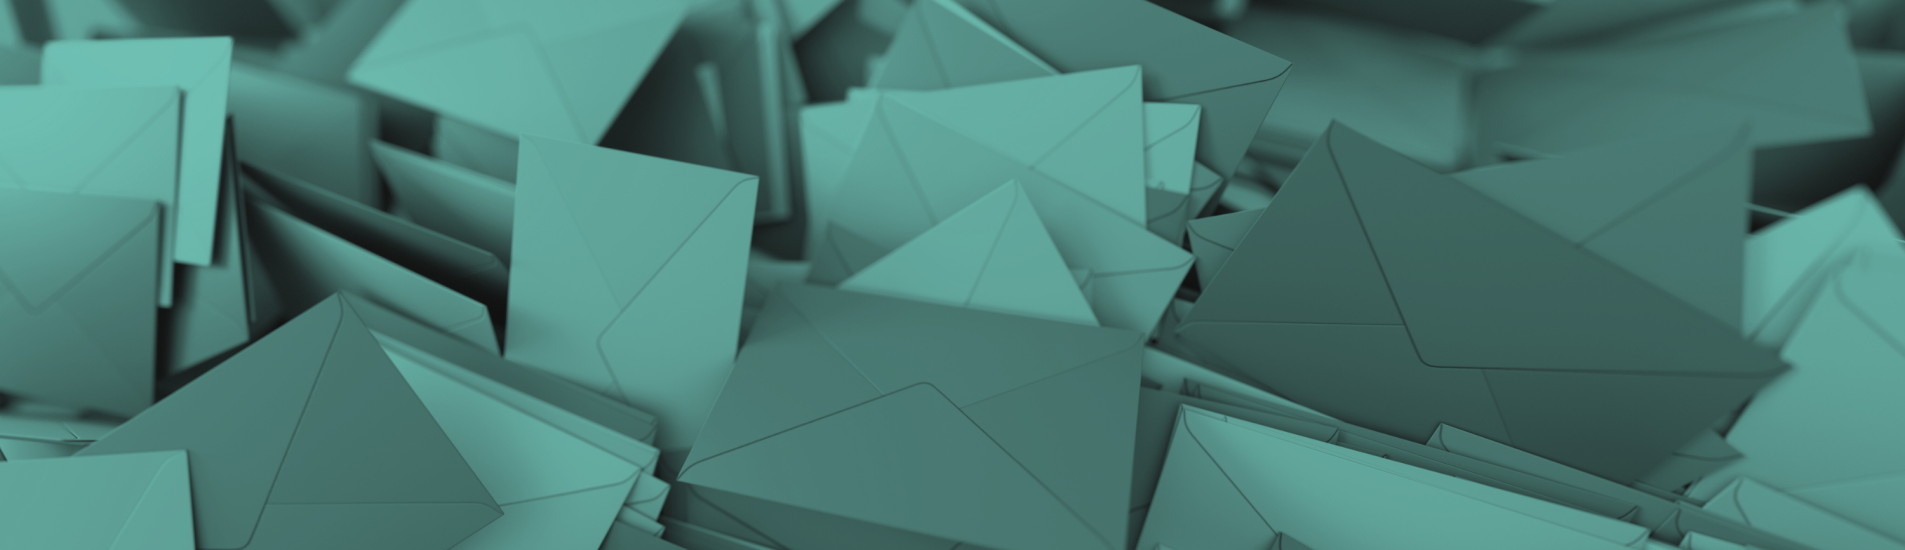 Envelopes for Envelope Size Guide